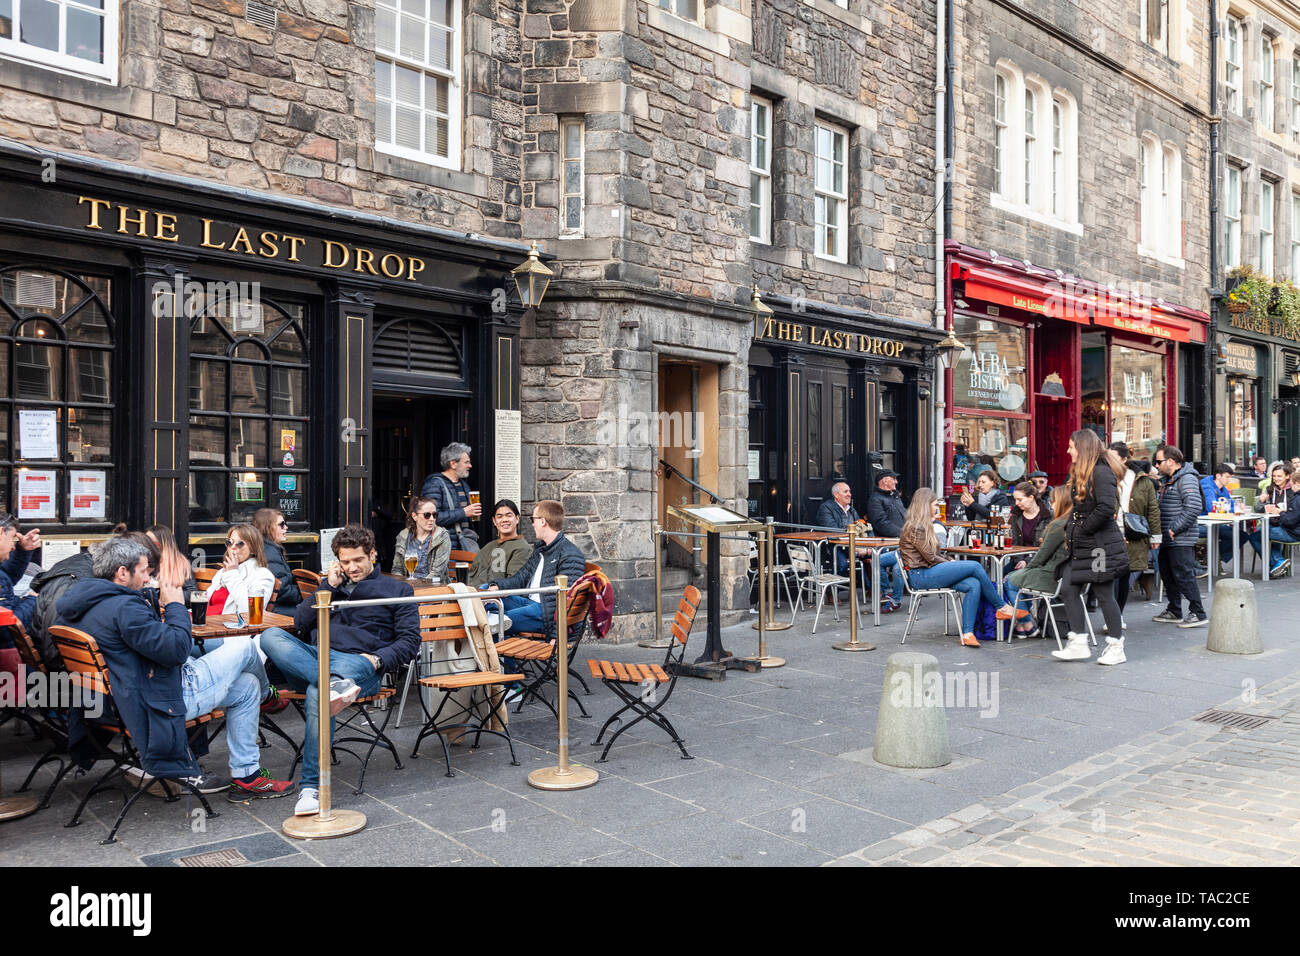 Les clients se détendre dans la utdoor assis dehors la dernière goutte pub dans le Grassmarket de la vieille ville d'Édimbourg, Écosse, Royaume-Uni Banque D'Images